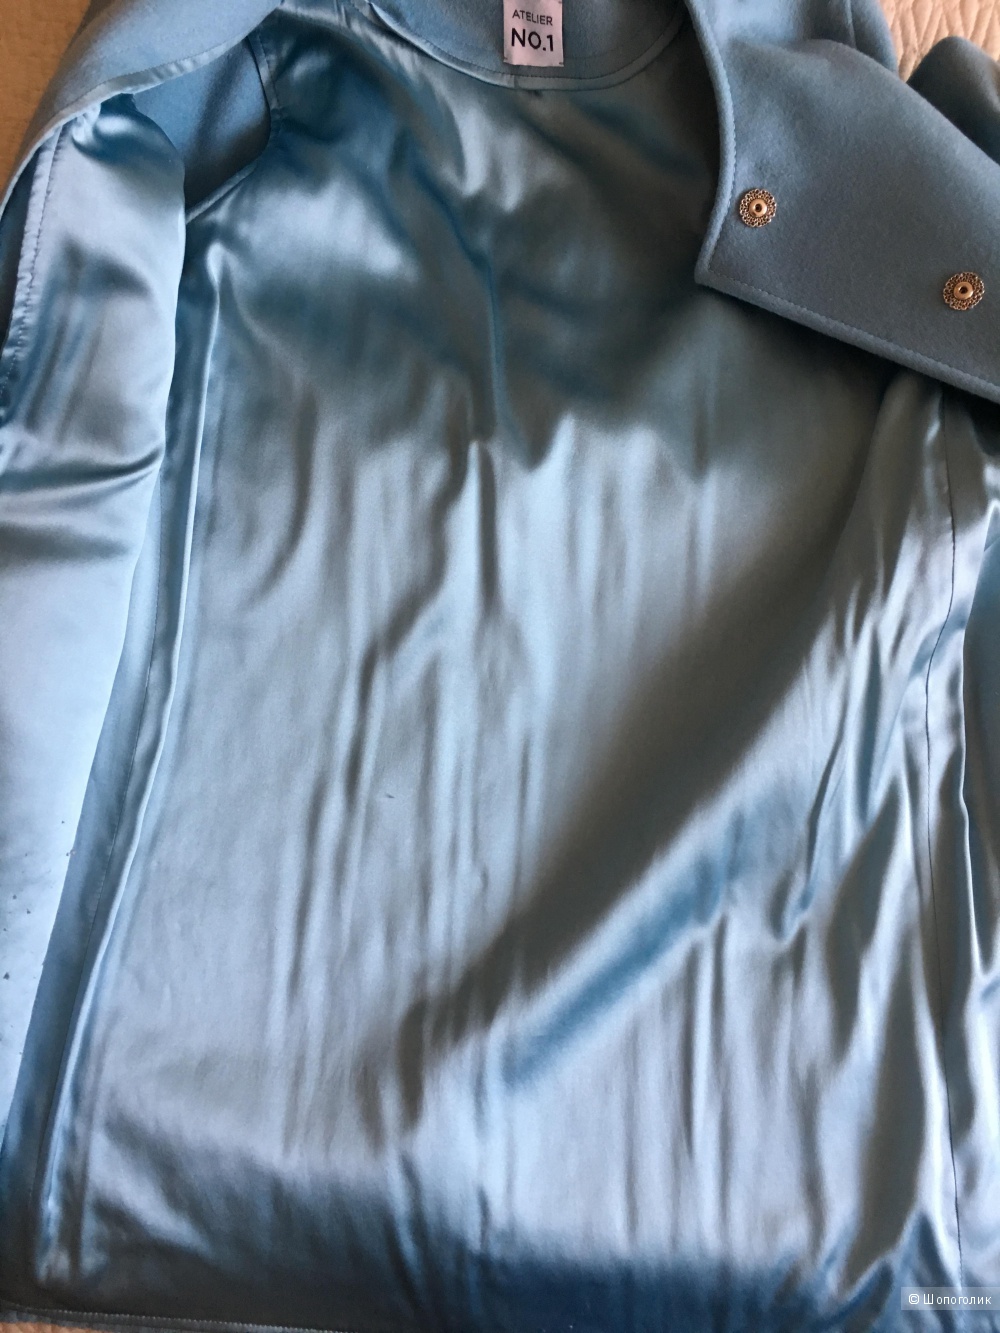 Кашемировое пальто от ателье премиум класса Atelier no.1 в размере S